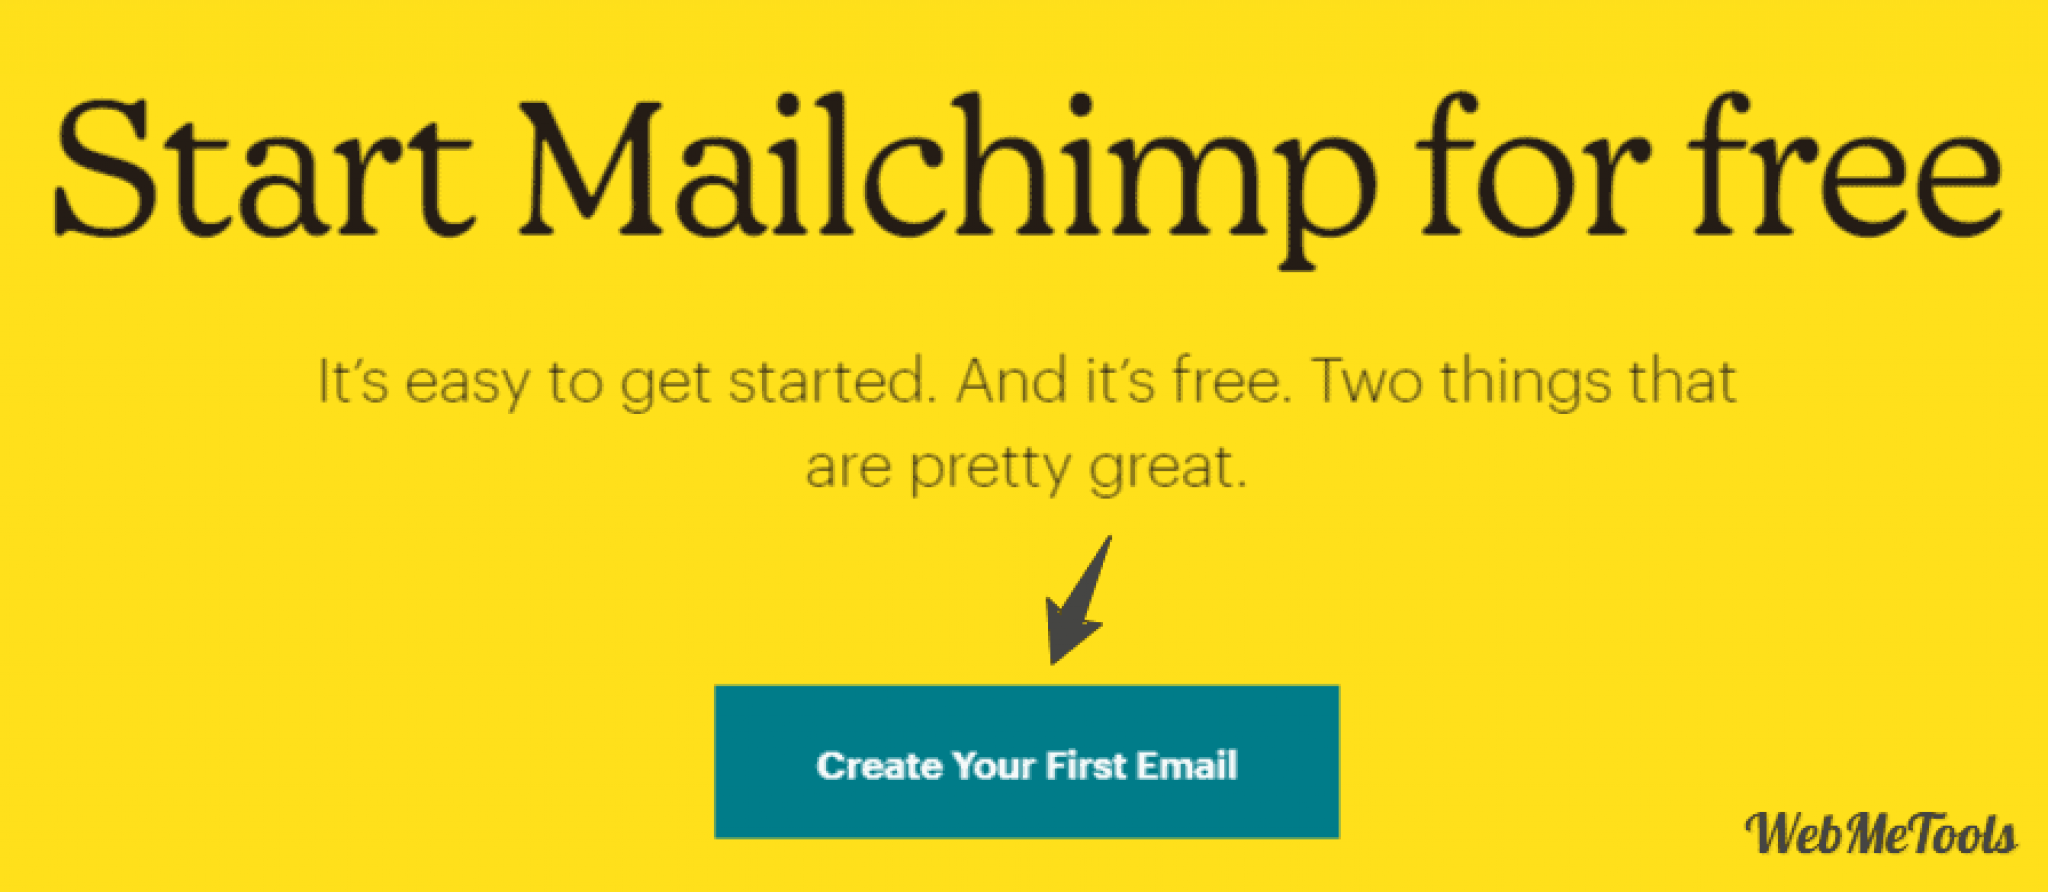 mailchimp free limits